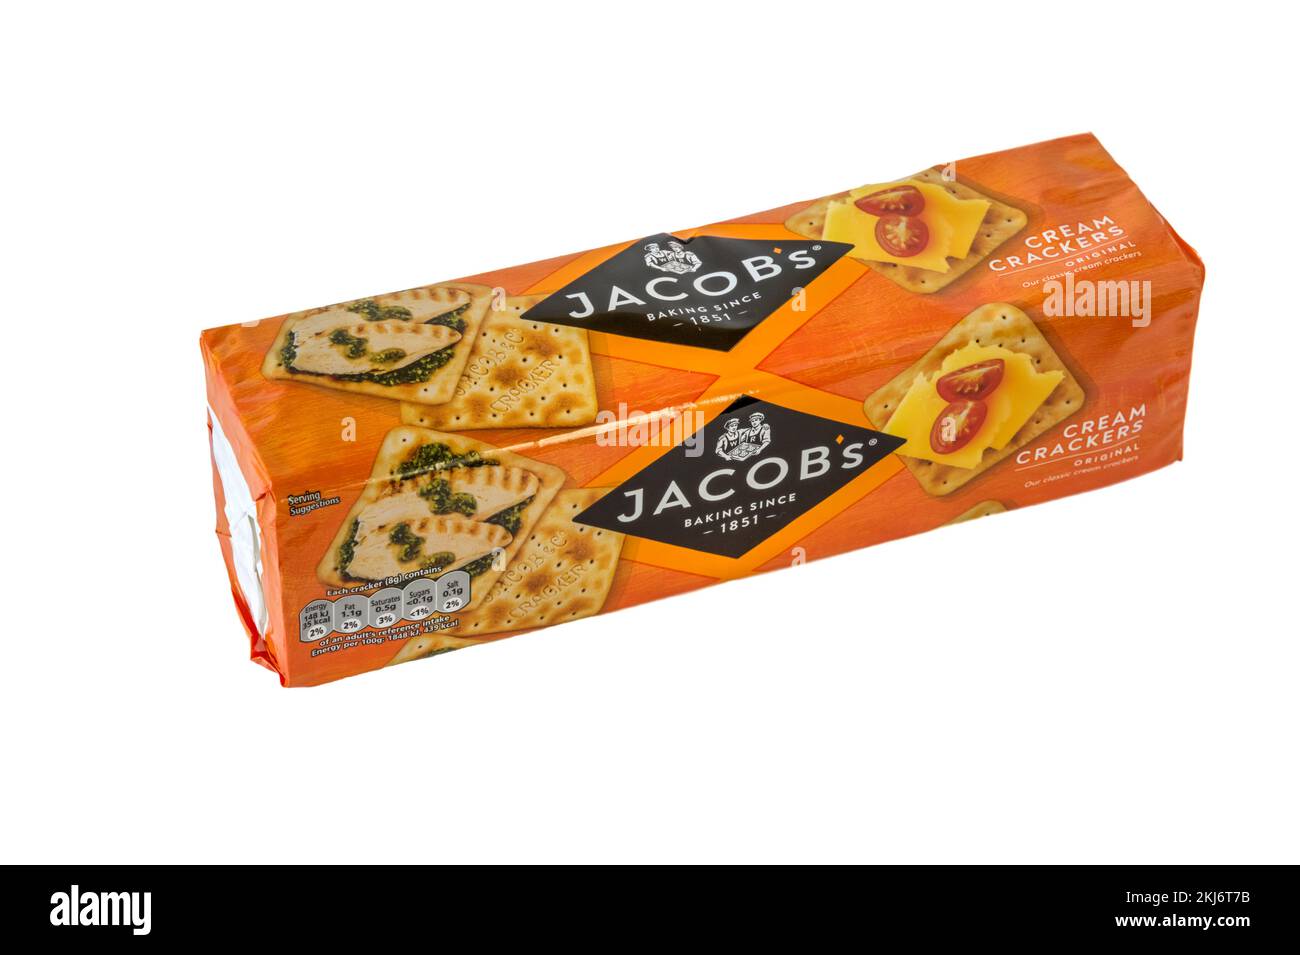 Un paquet de craquelins Jacobs Cream fabriqué par Jacobs, une filiale de United biscuits. Banque D'Images